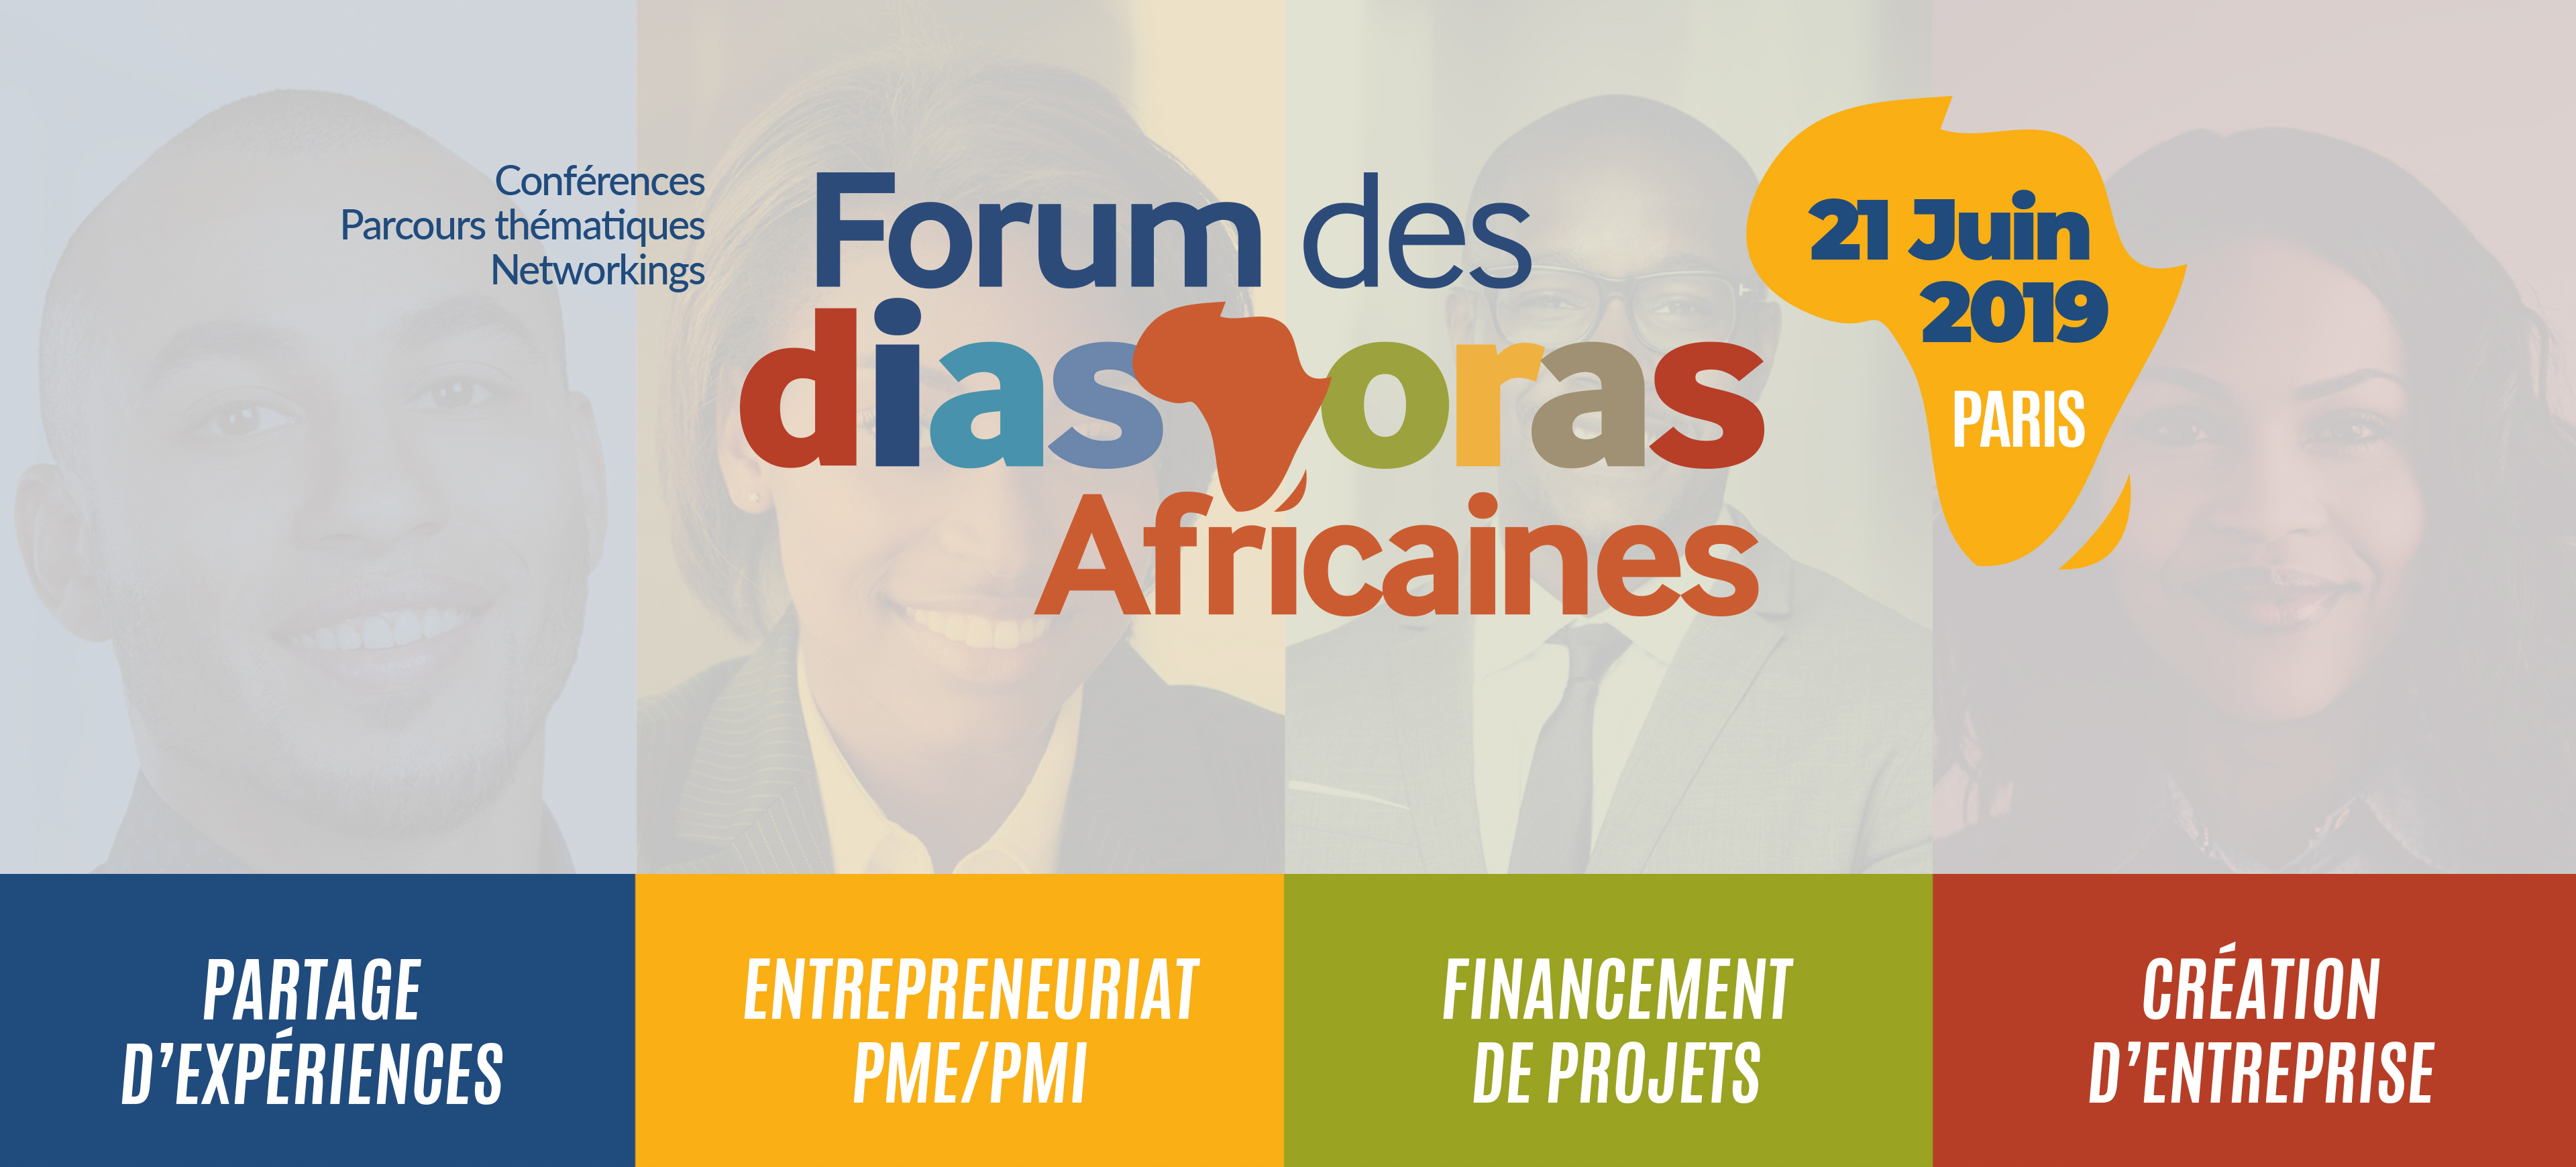 Talent2Africa participates in the Forum of African Diasporas